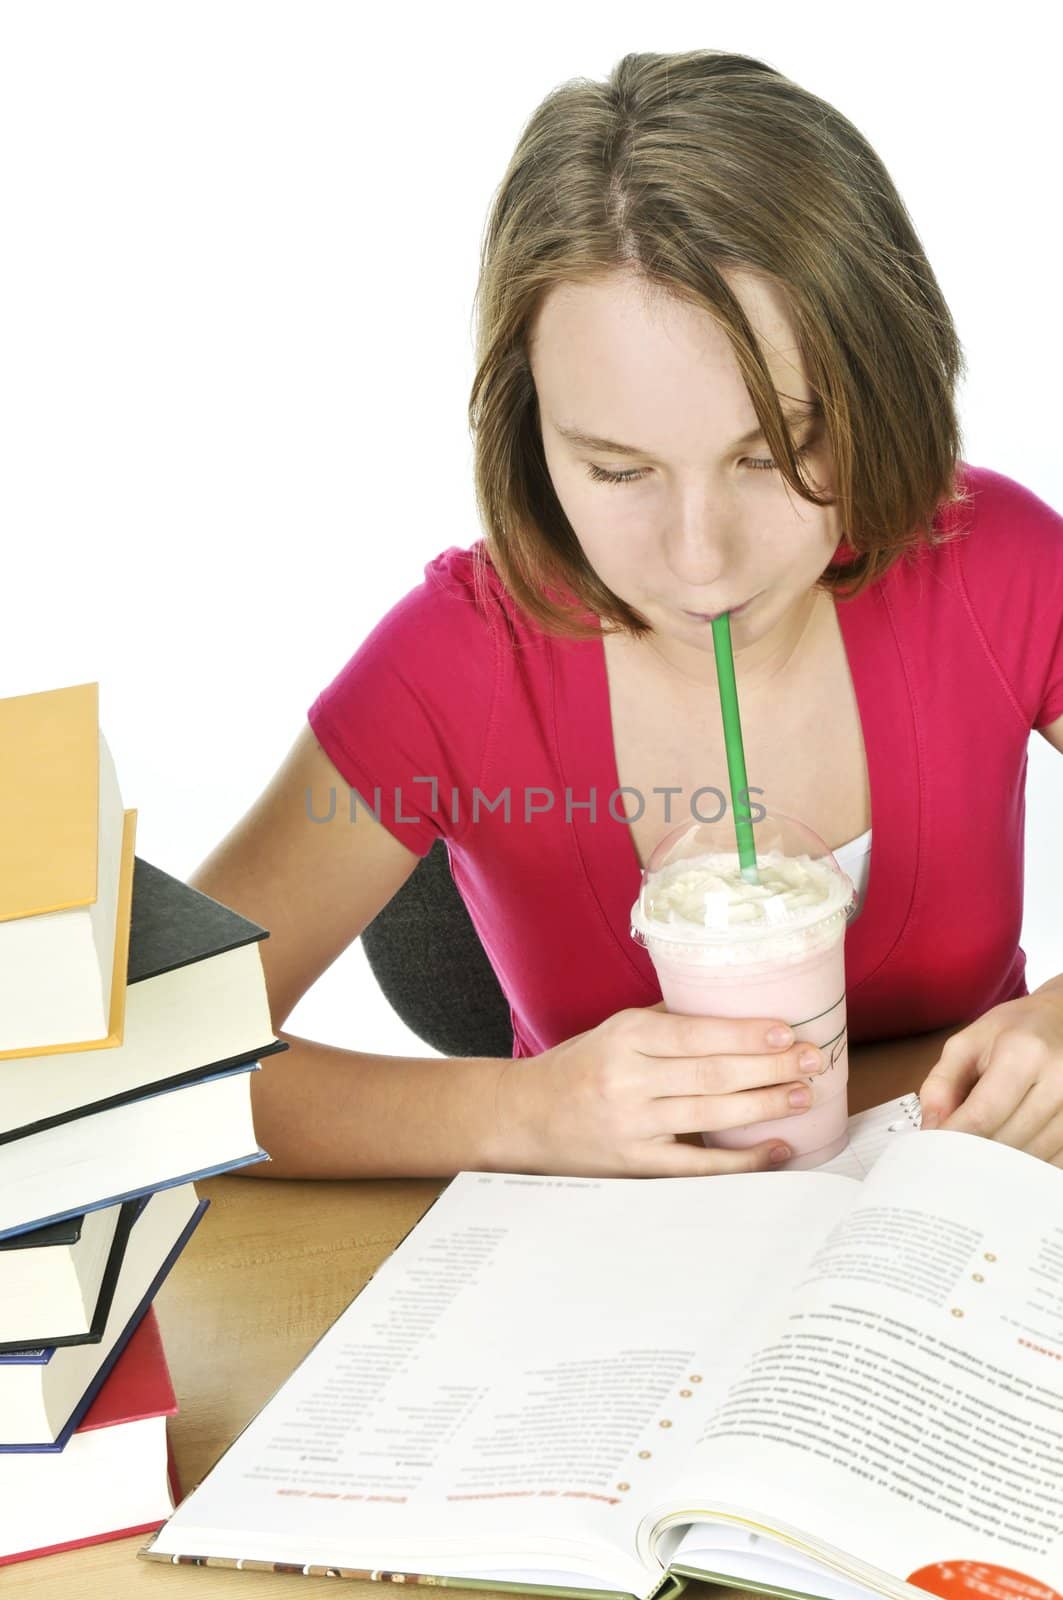 Teenage school girl studying with a milkshake